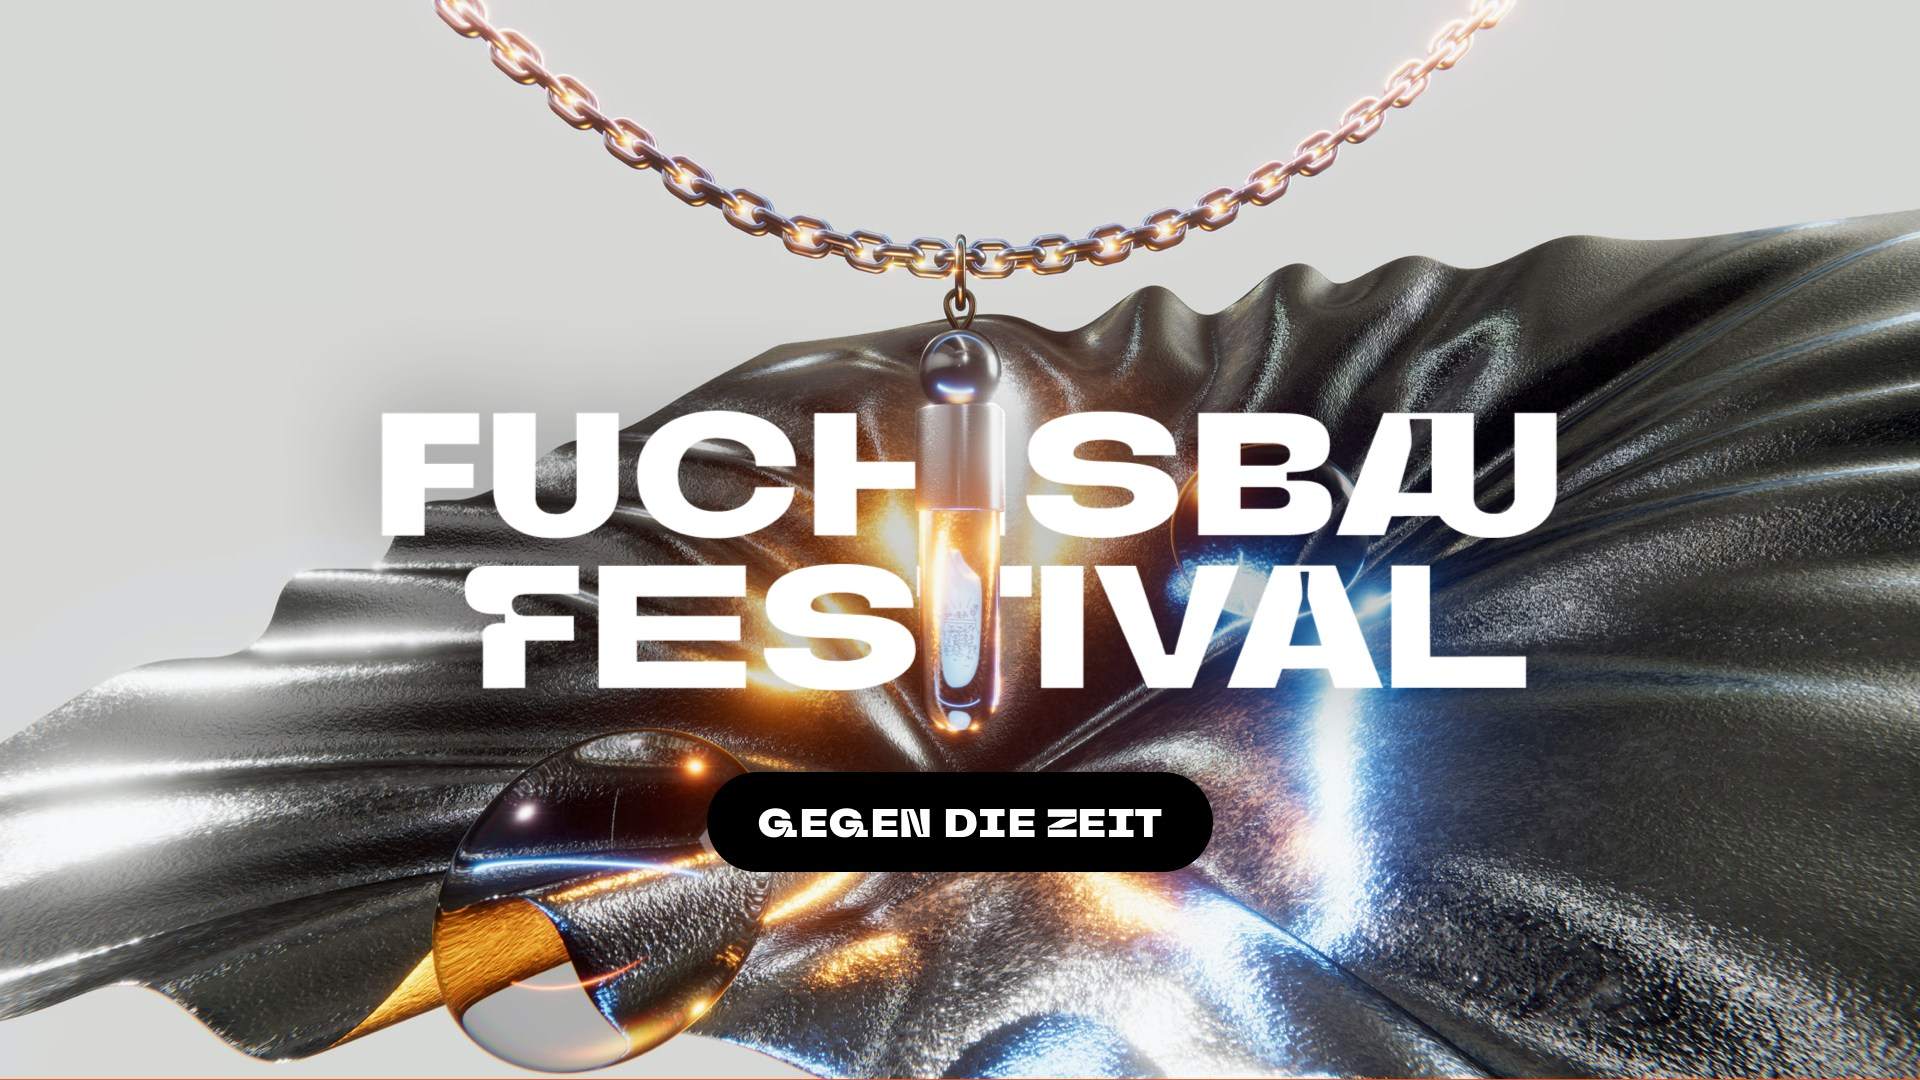 Fuchsbau Festival 2022 x Gegen die Zeit - Página frontal